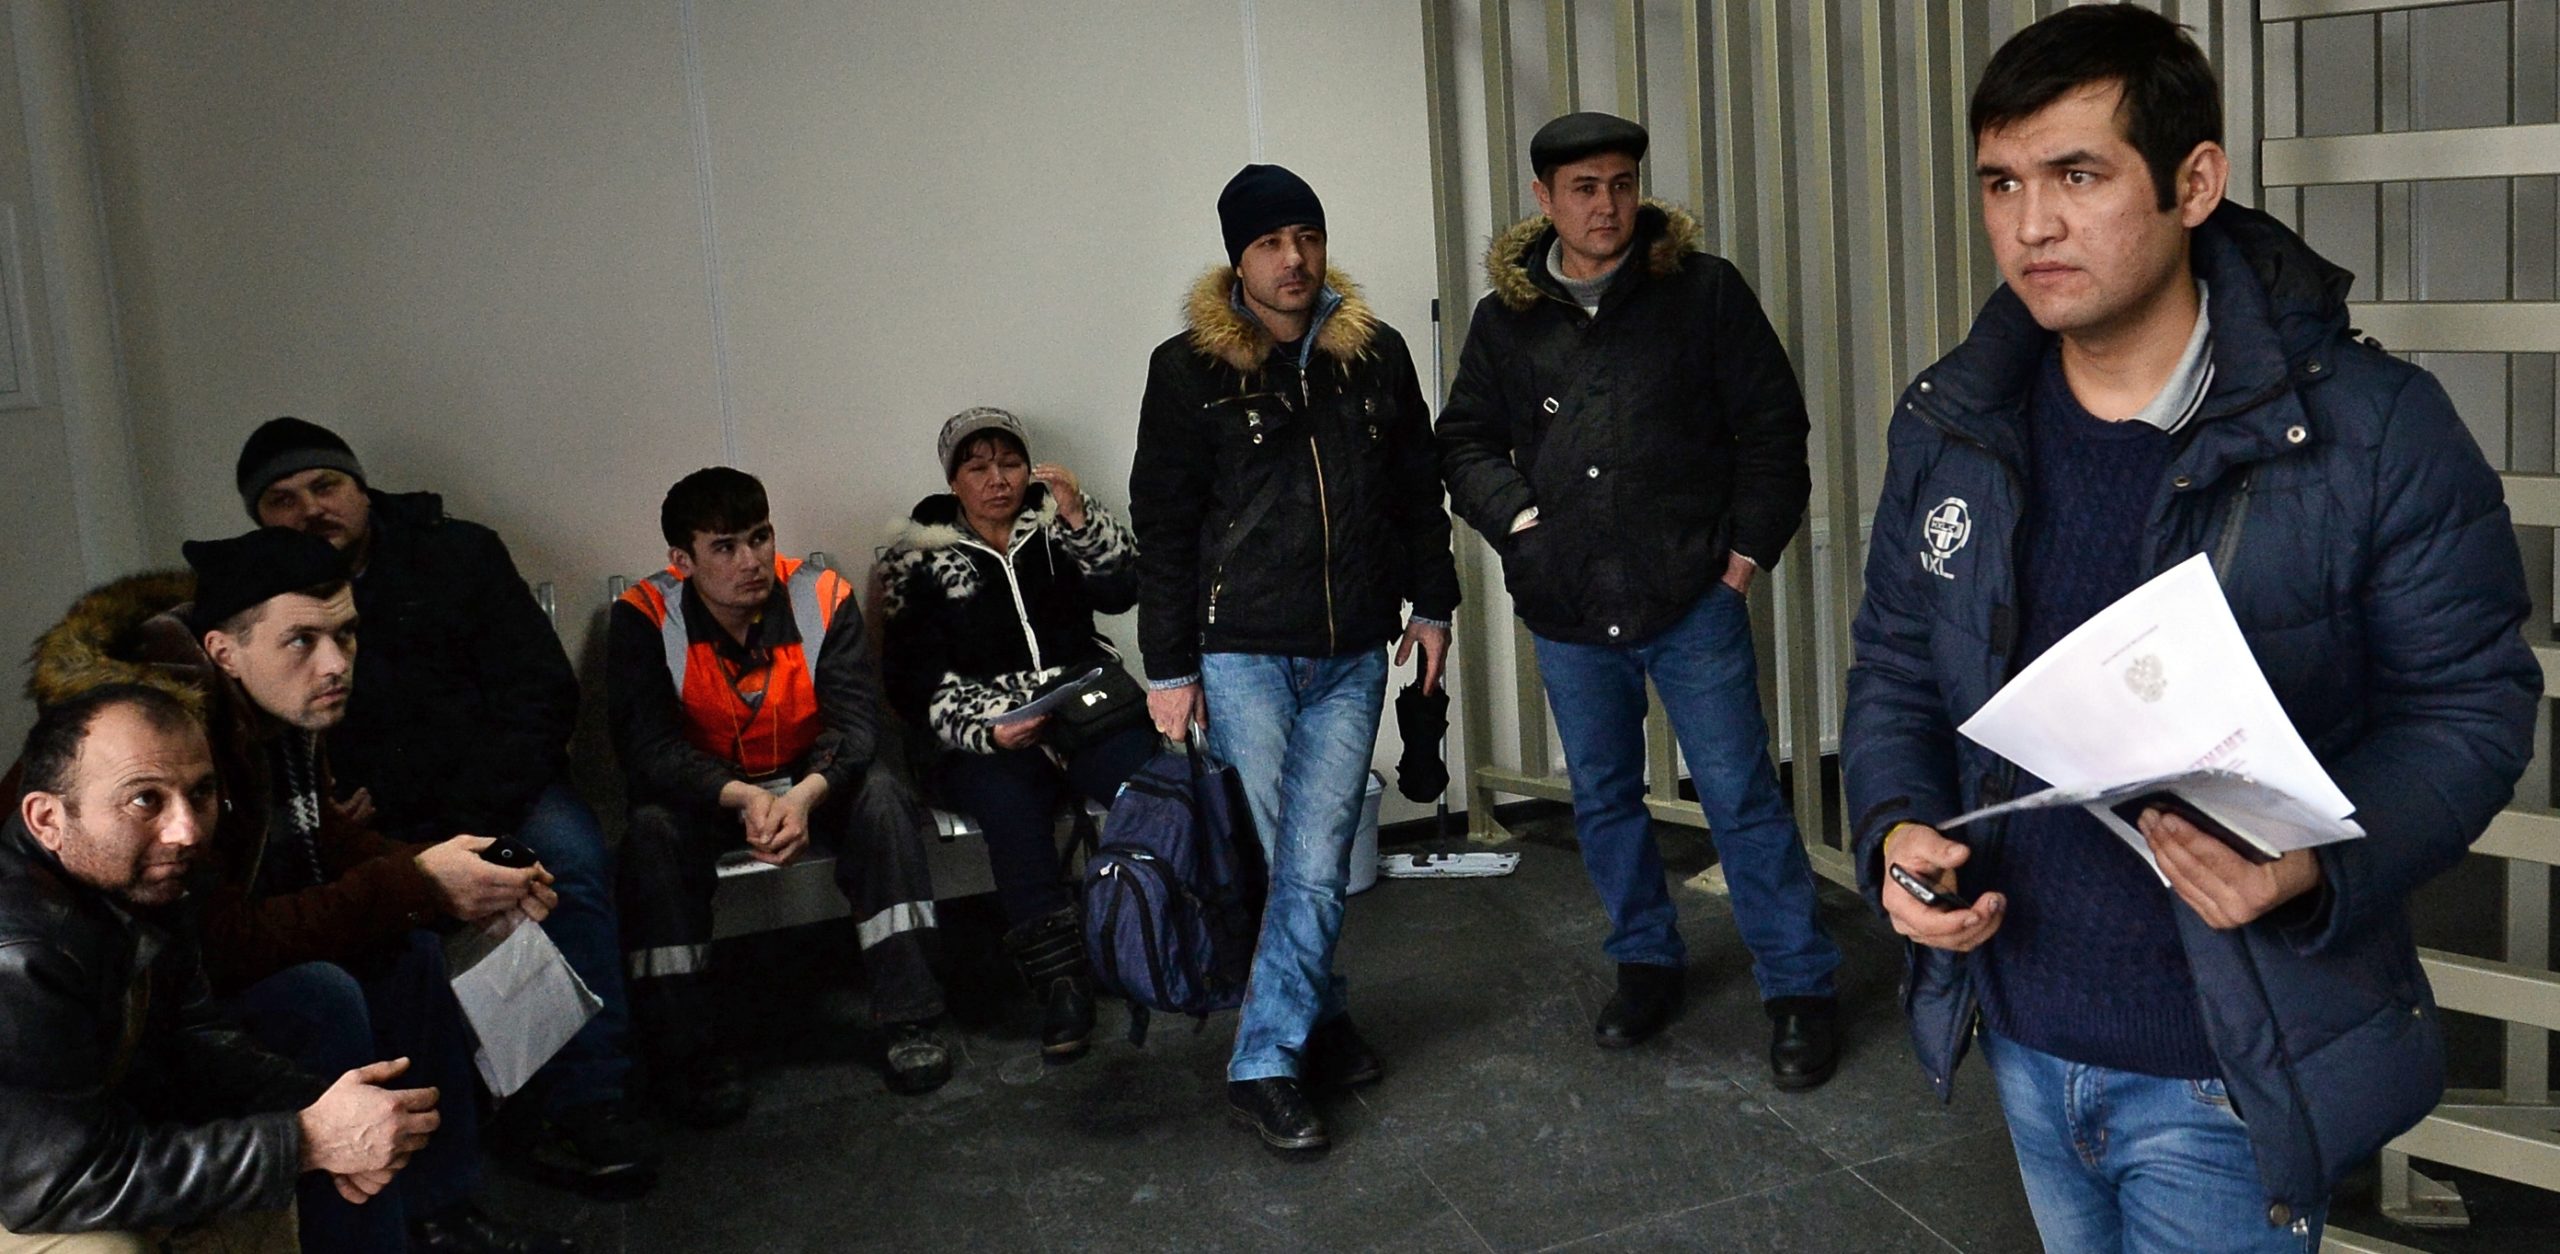 Иностранцы могут голосовать. Мигрант. Мигранты в Москве. Мигранты в миграционном центре. Трудовые мигранты в миграционном центре.